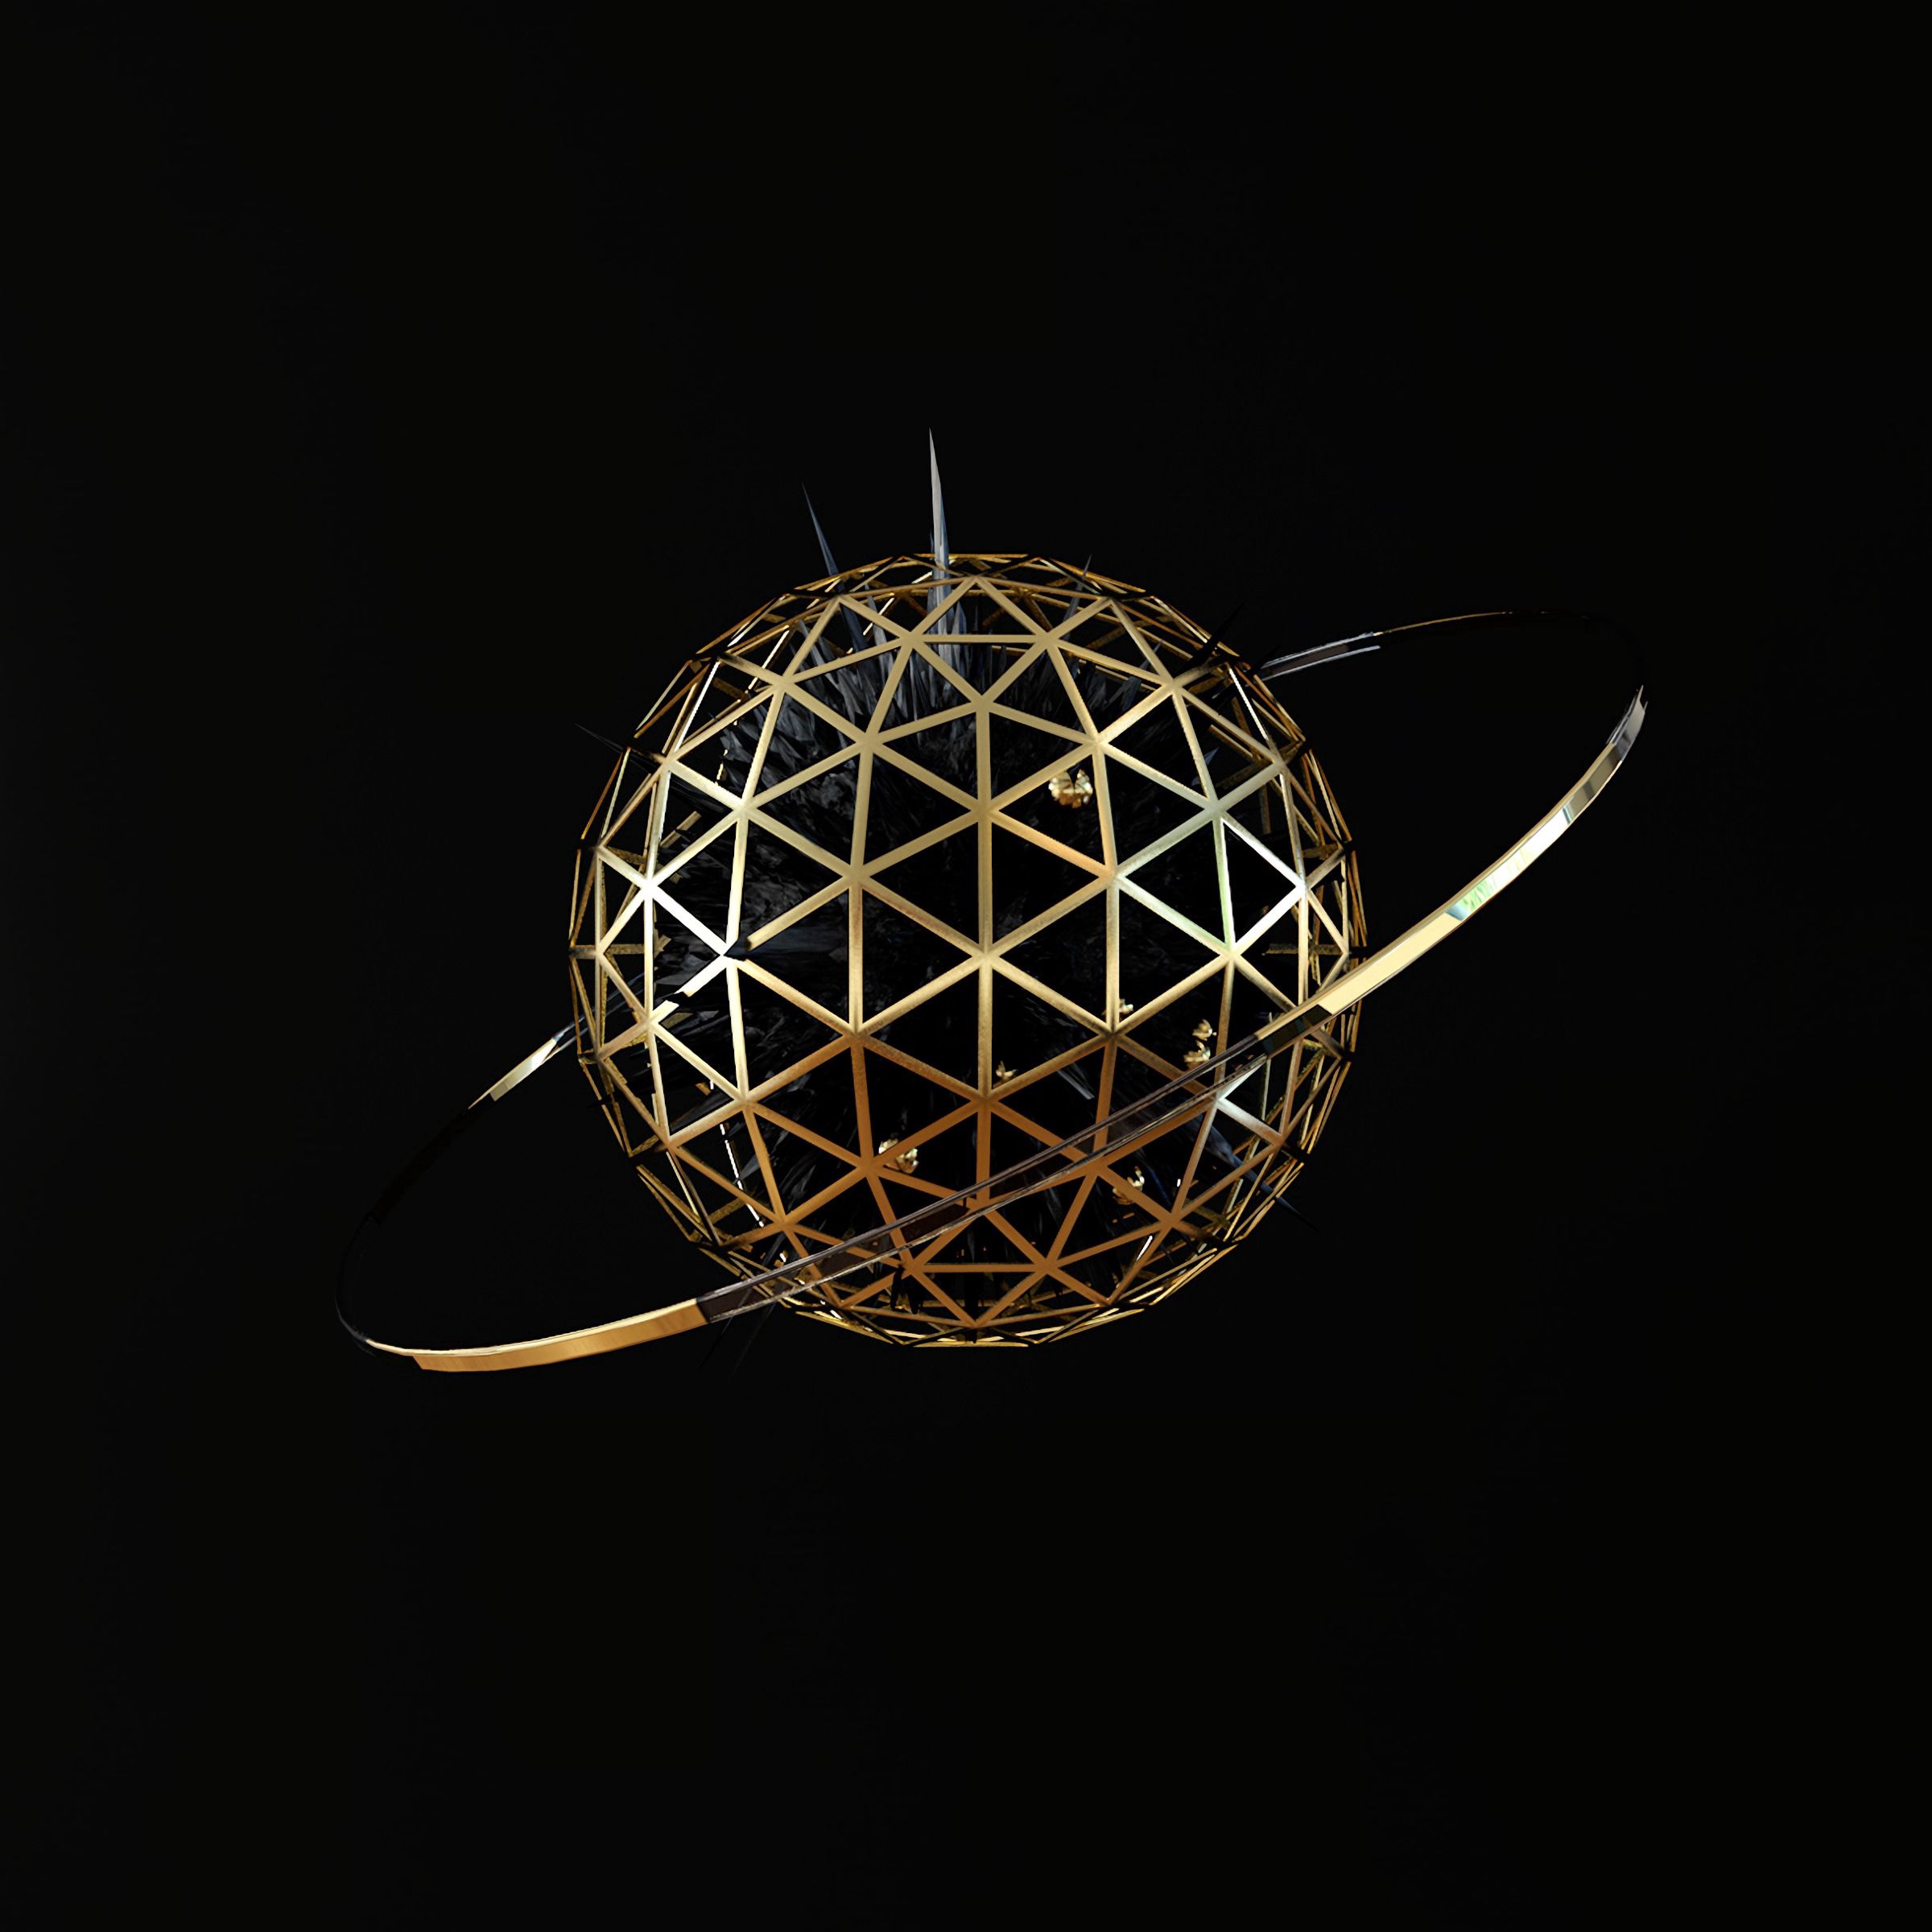 32k Wallpaper Sphere 3d, ball, metallic, ring